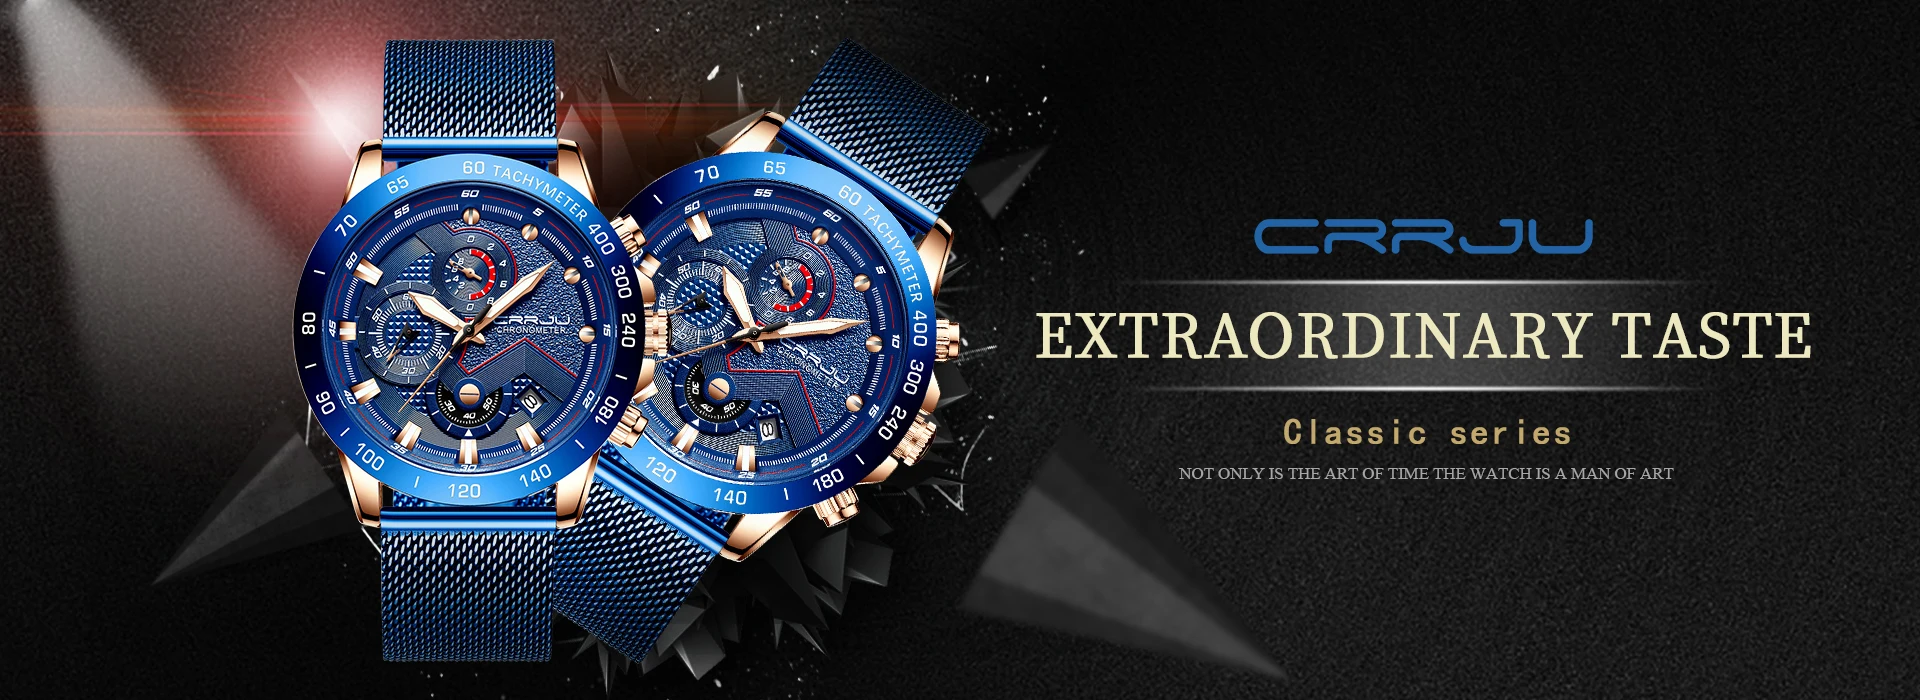 2019 Новый Топ бренд CURREN Роскошные спортивные кварцевые часы мужские модные стильные хронограф часы стальной ремешок montre homme